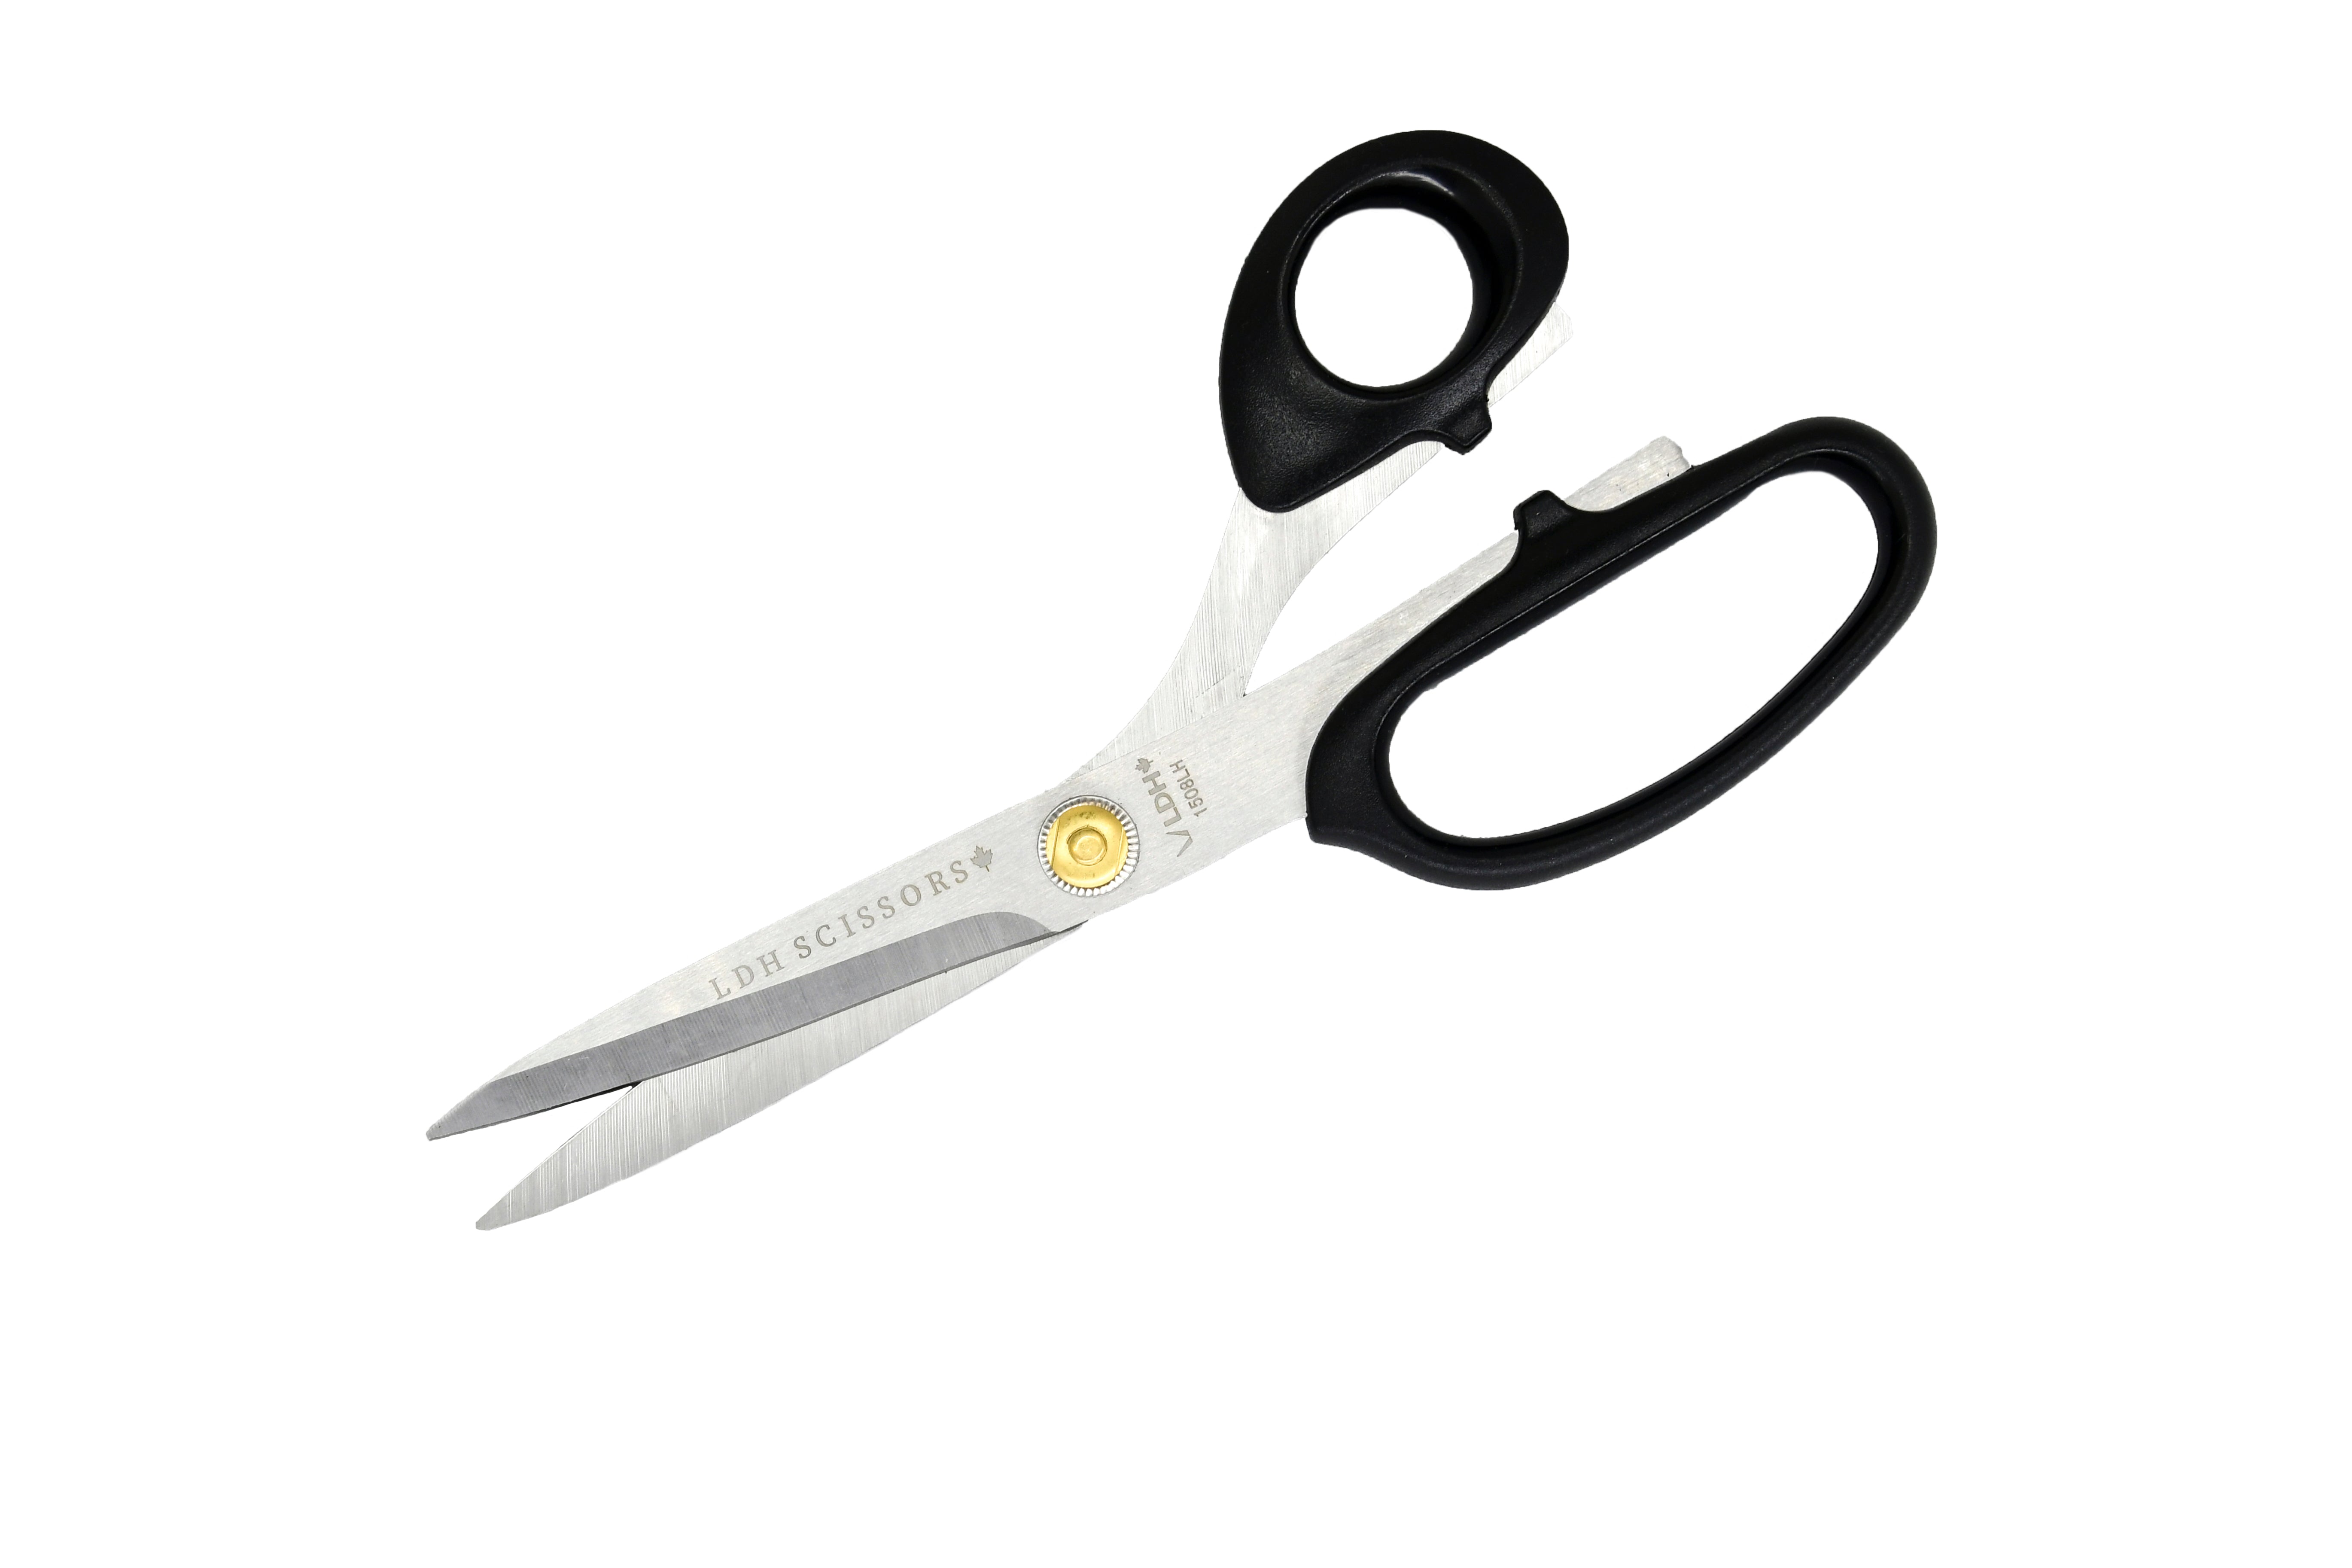 Left-handed fabric scissors 21 cm